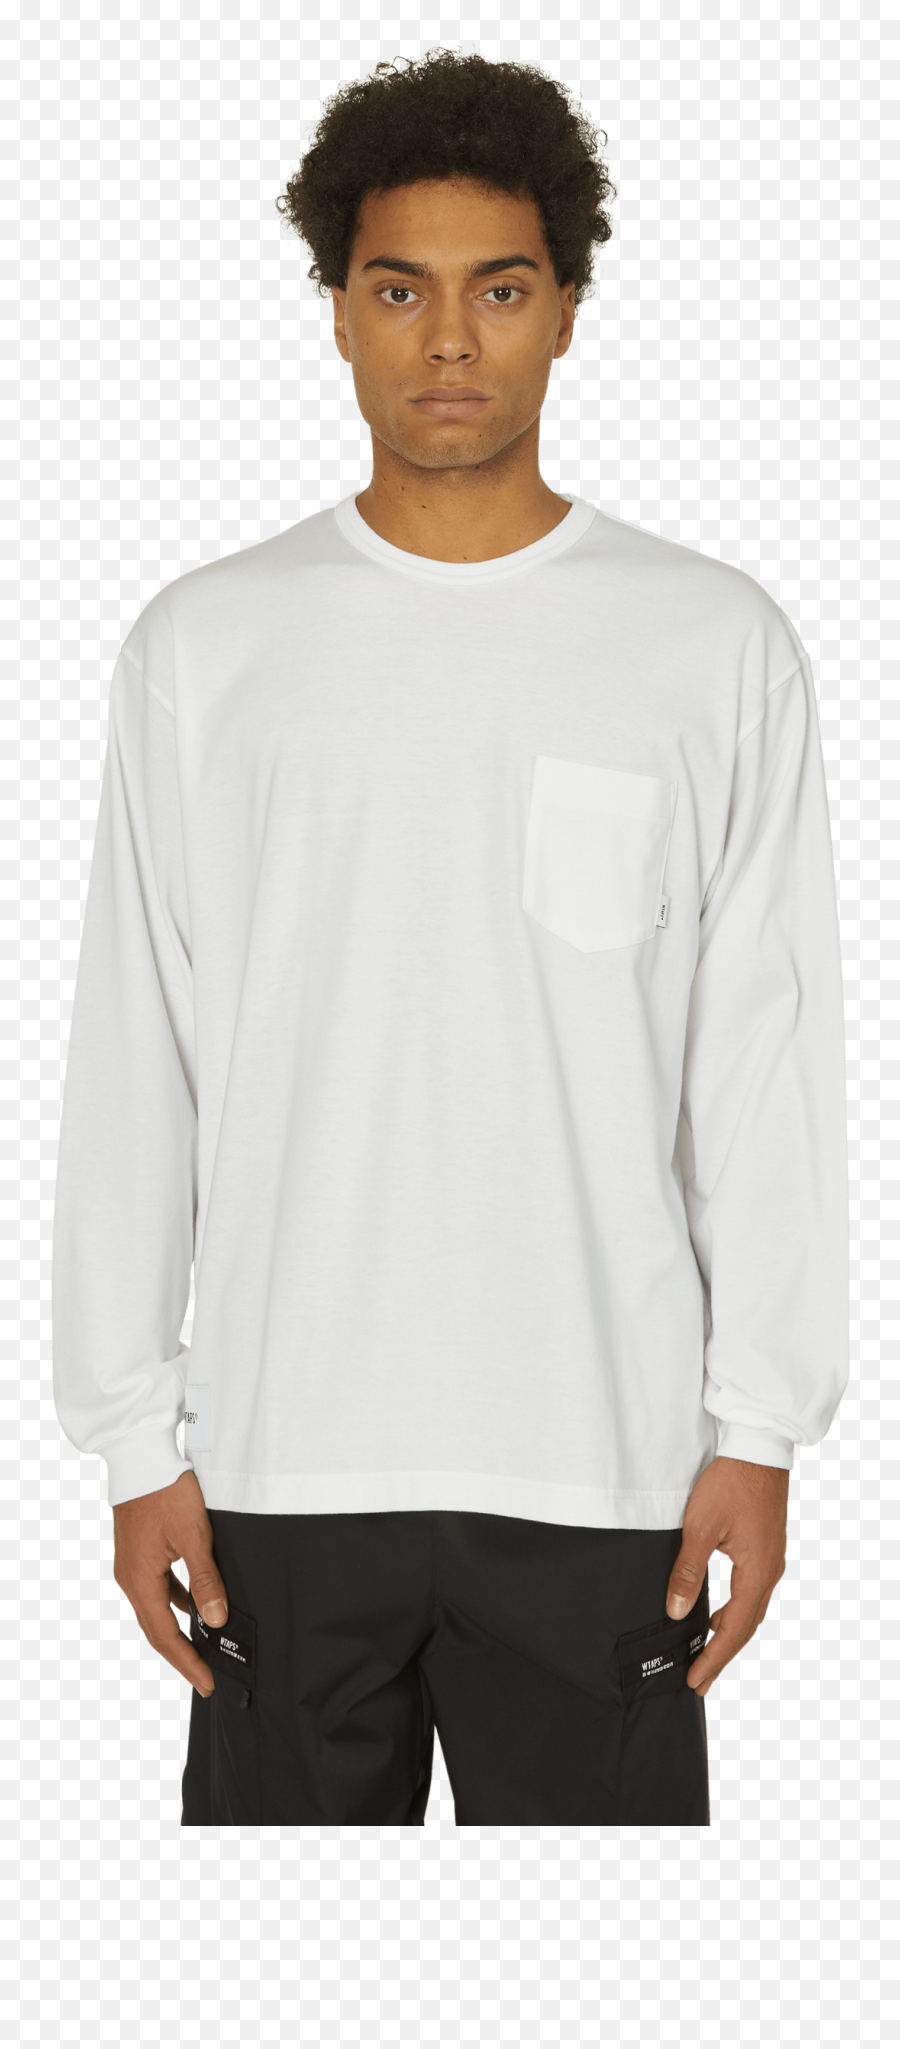 Blank 01 Long Sleeve T - Shirt Png,Blank T Shirt Png